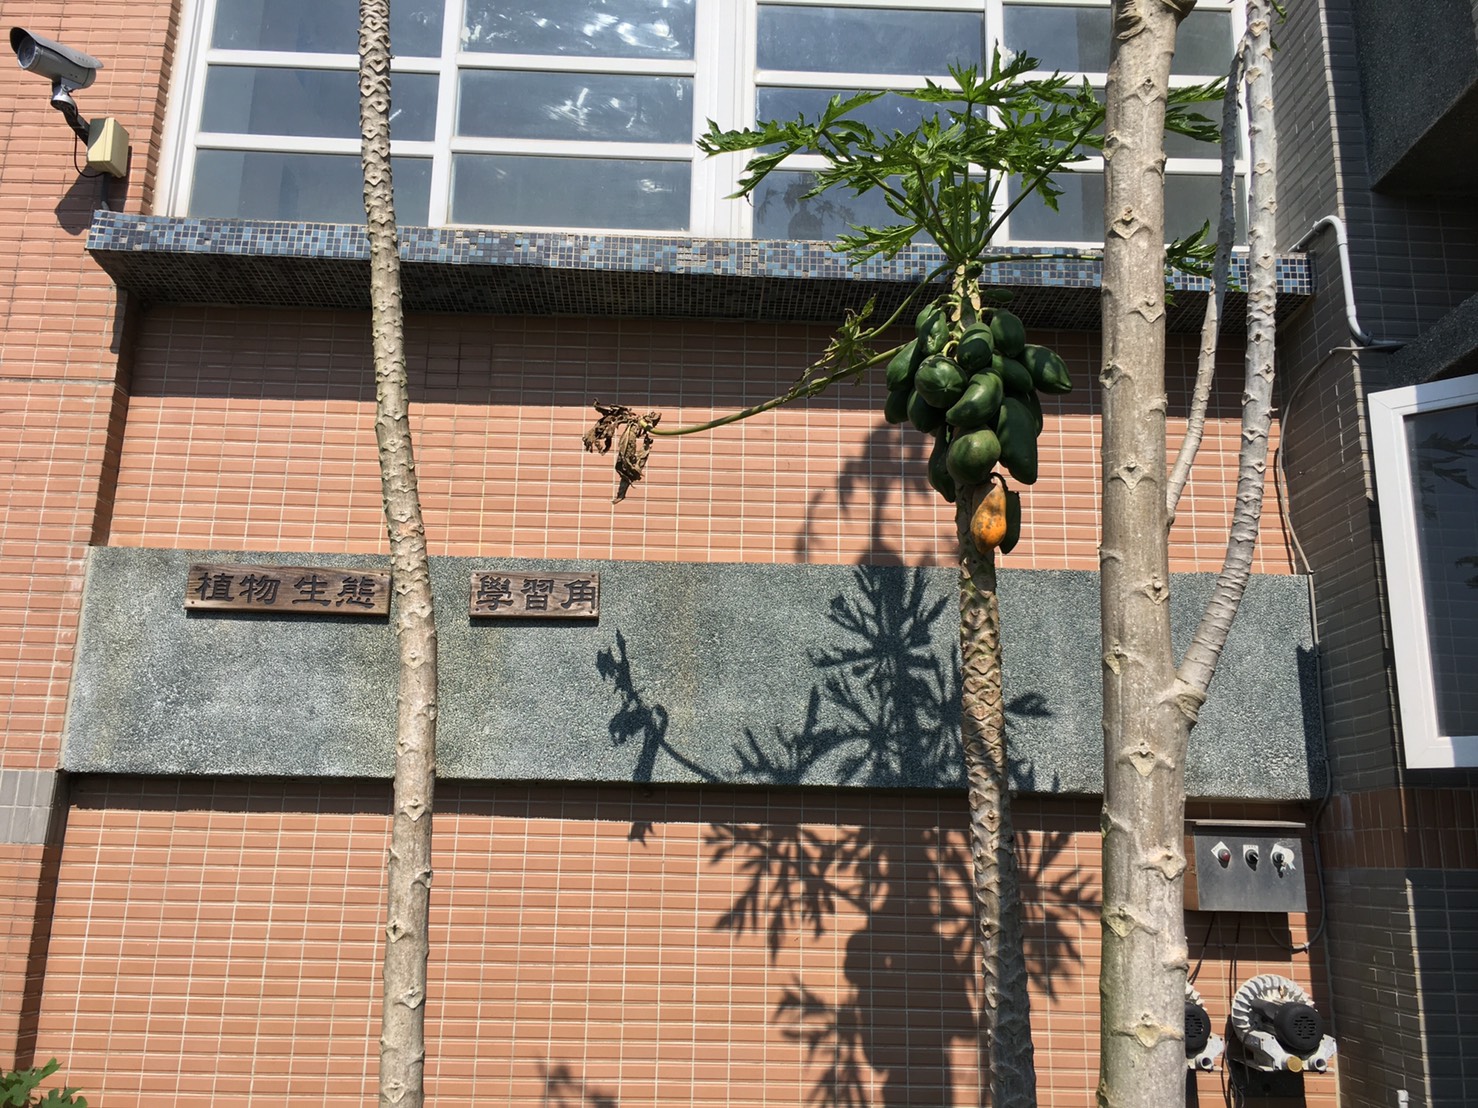 植物生態學習角的木瓜樹結實累累